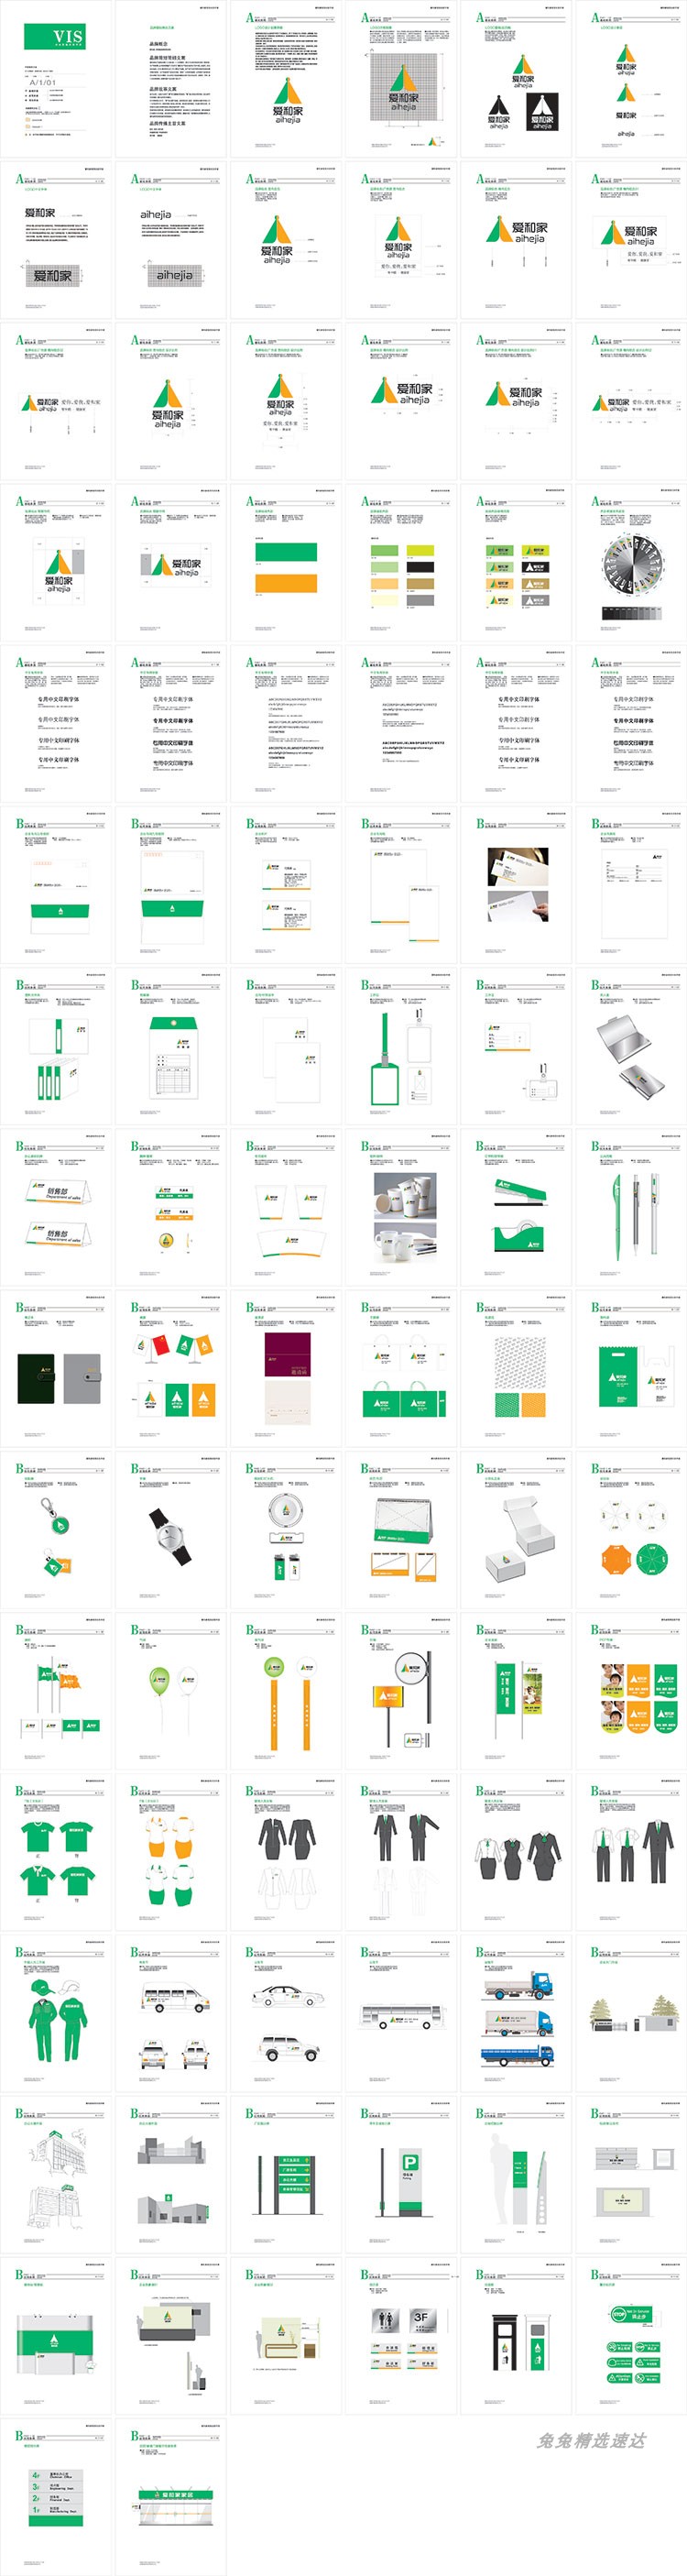 公司企业VI视觉应用设计全套手册模板品牌酒店AI格式导视素材 第24张